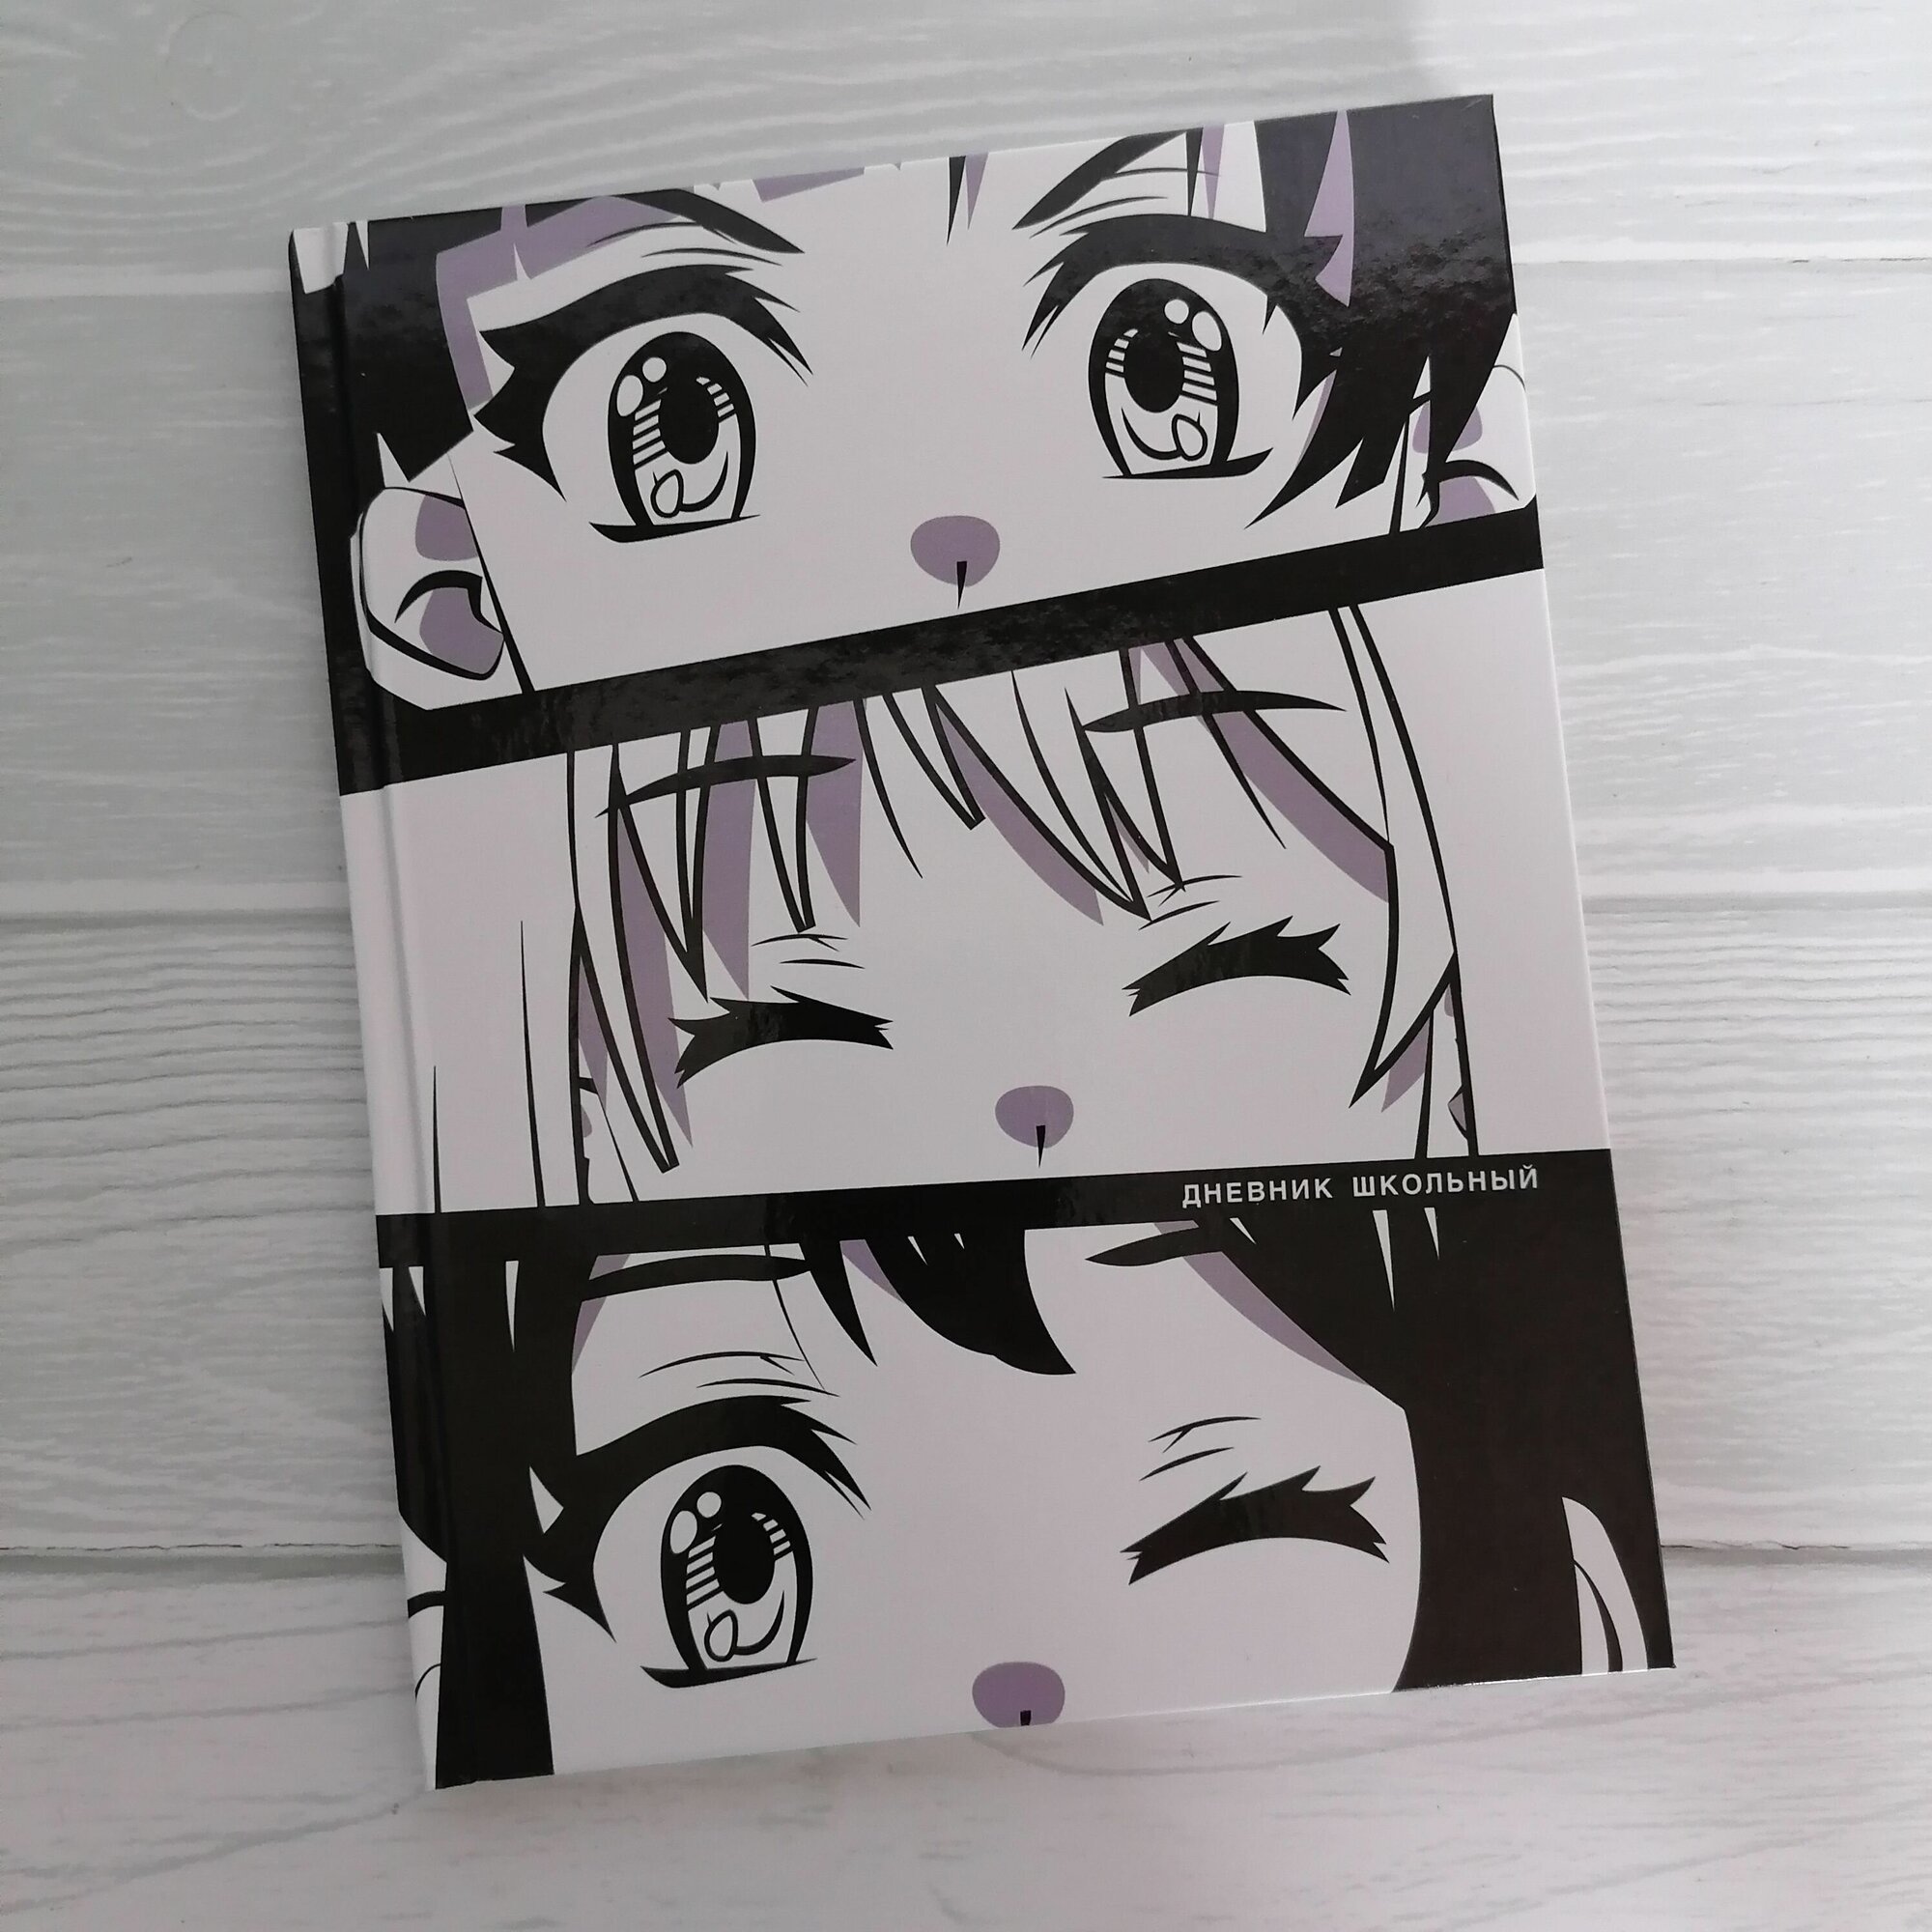 Дневник школьный аниме твердая обложка